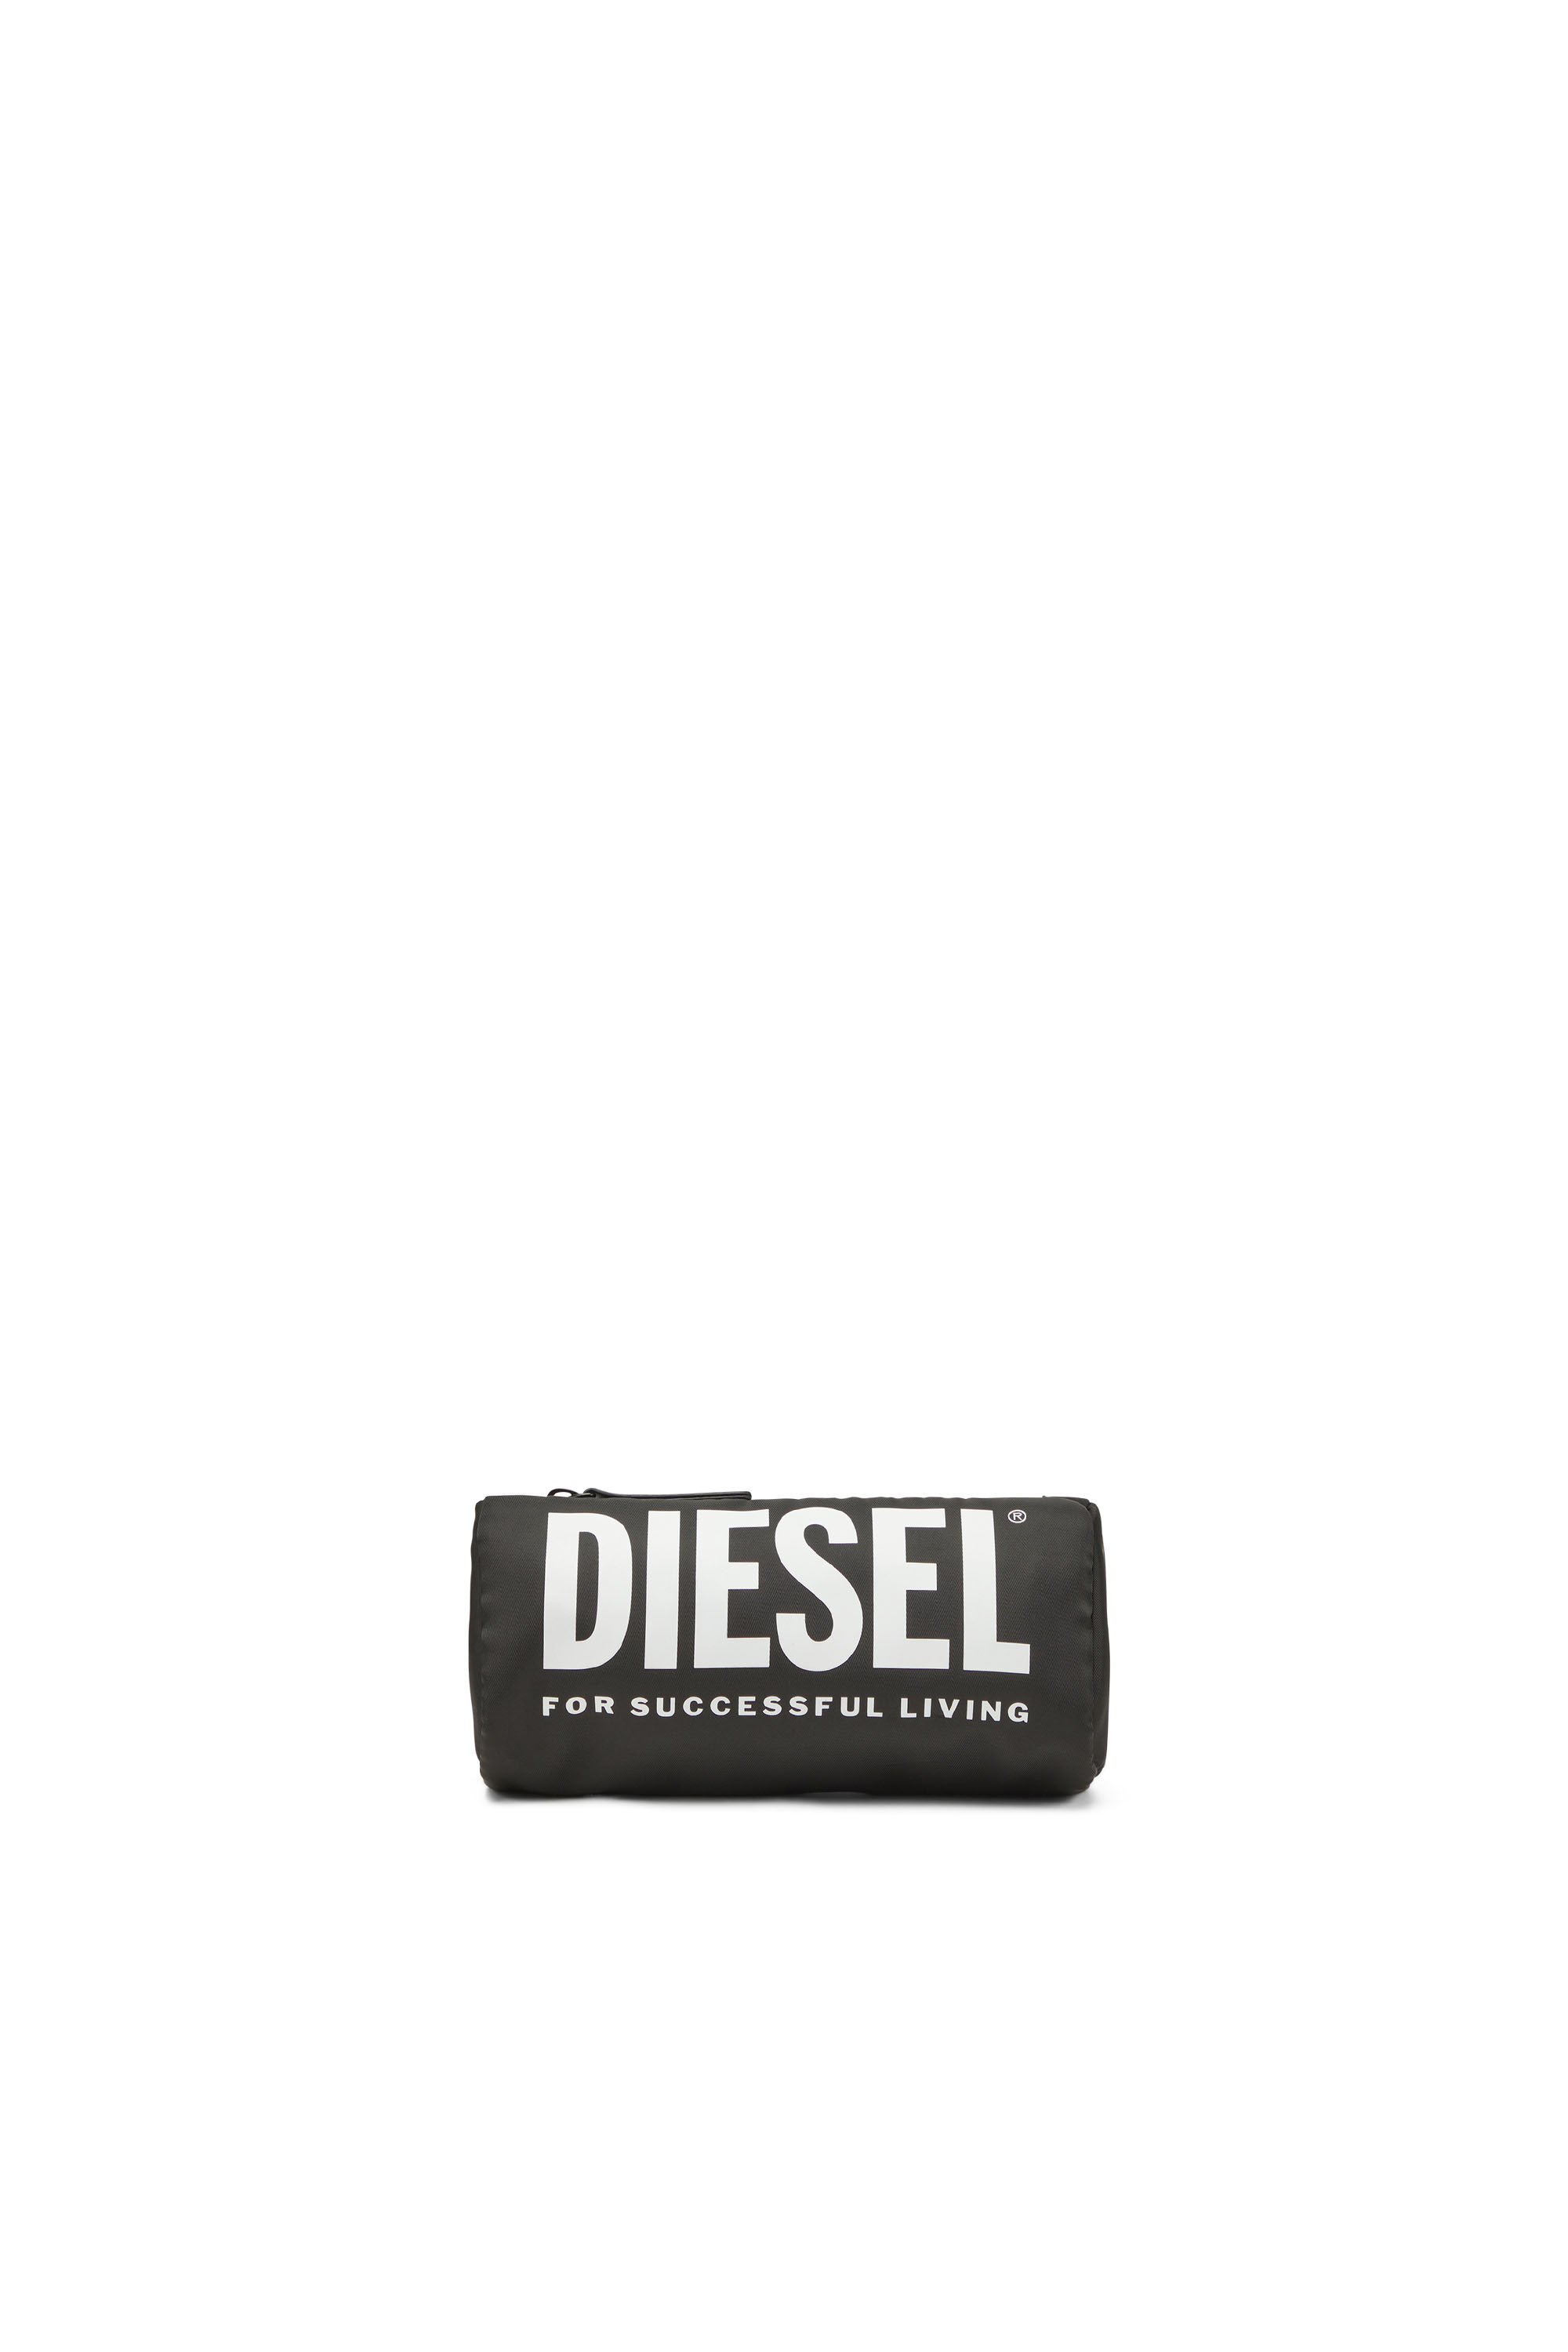 Diesel - WCASELOGO, Negro - Image 1